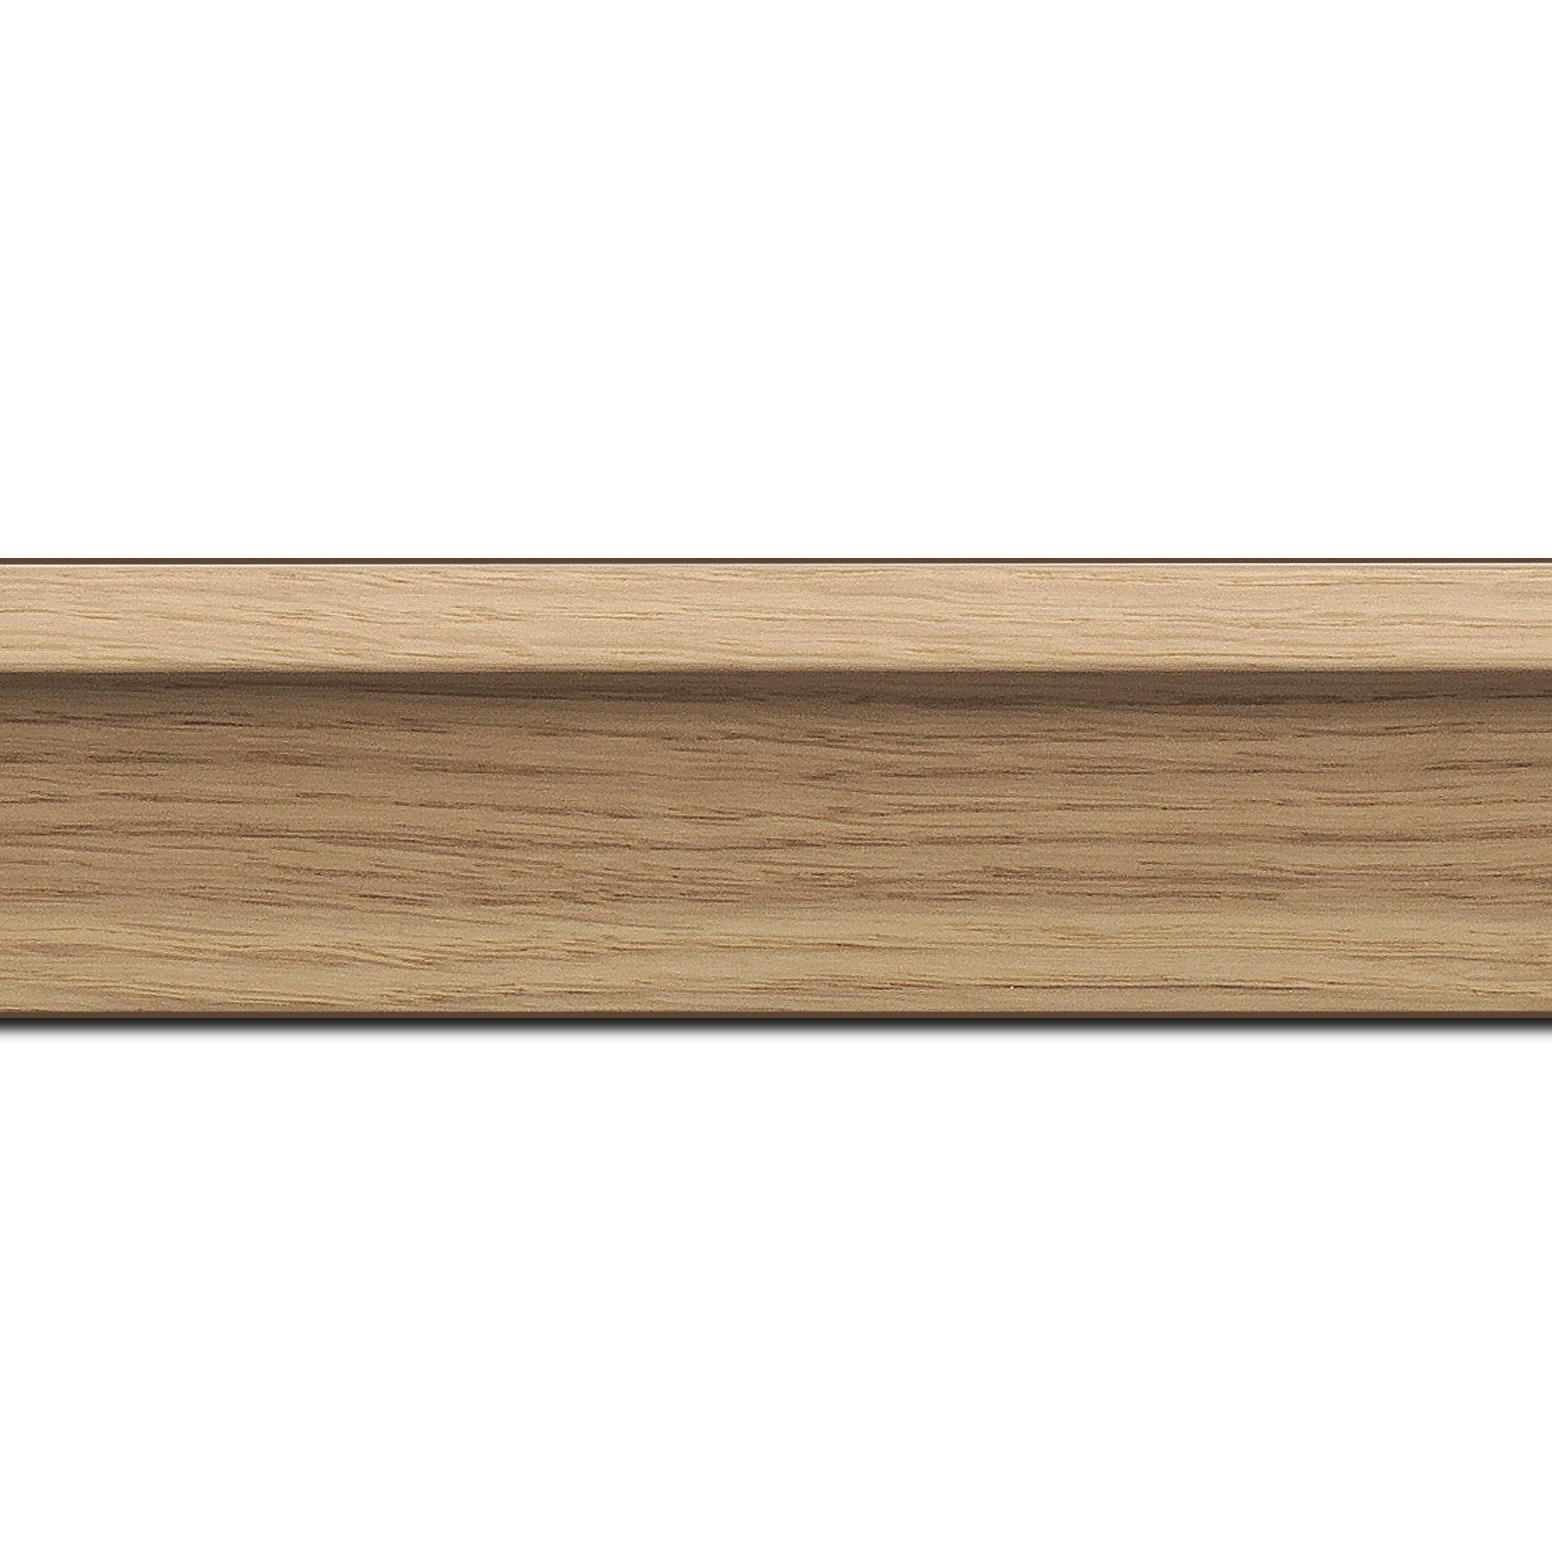 Baguette longueur 1.40m bois caisse américaine profil en l largeur 4.5cm placage haut de gamme chêne naturel (spécialement conçu pour les châssis d'une épaisseur jusqu’à 3.5cm ) information complémentaire : il faut renseigner la dimension précise de votre sujet  et l'espace intérieur entre la toile et le cadre sera de 1.5cm